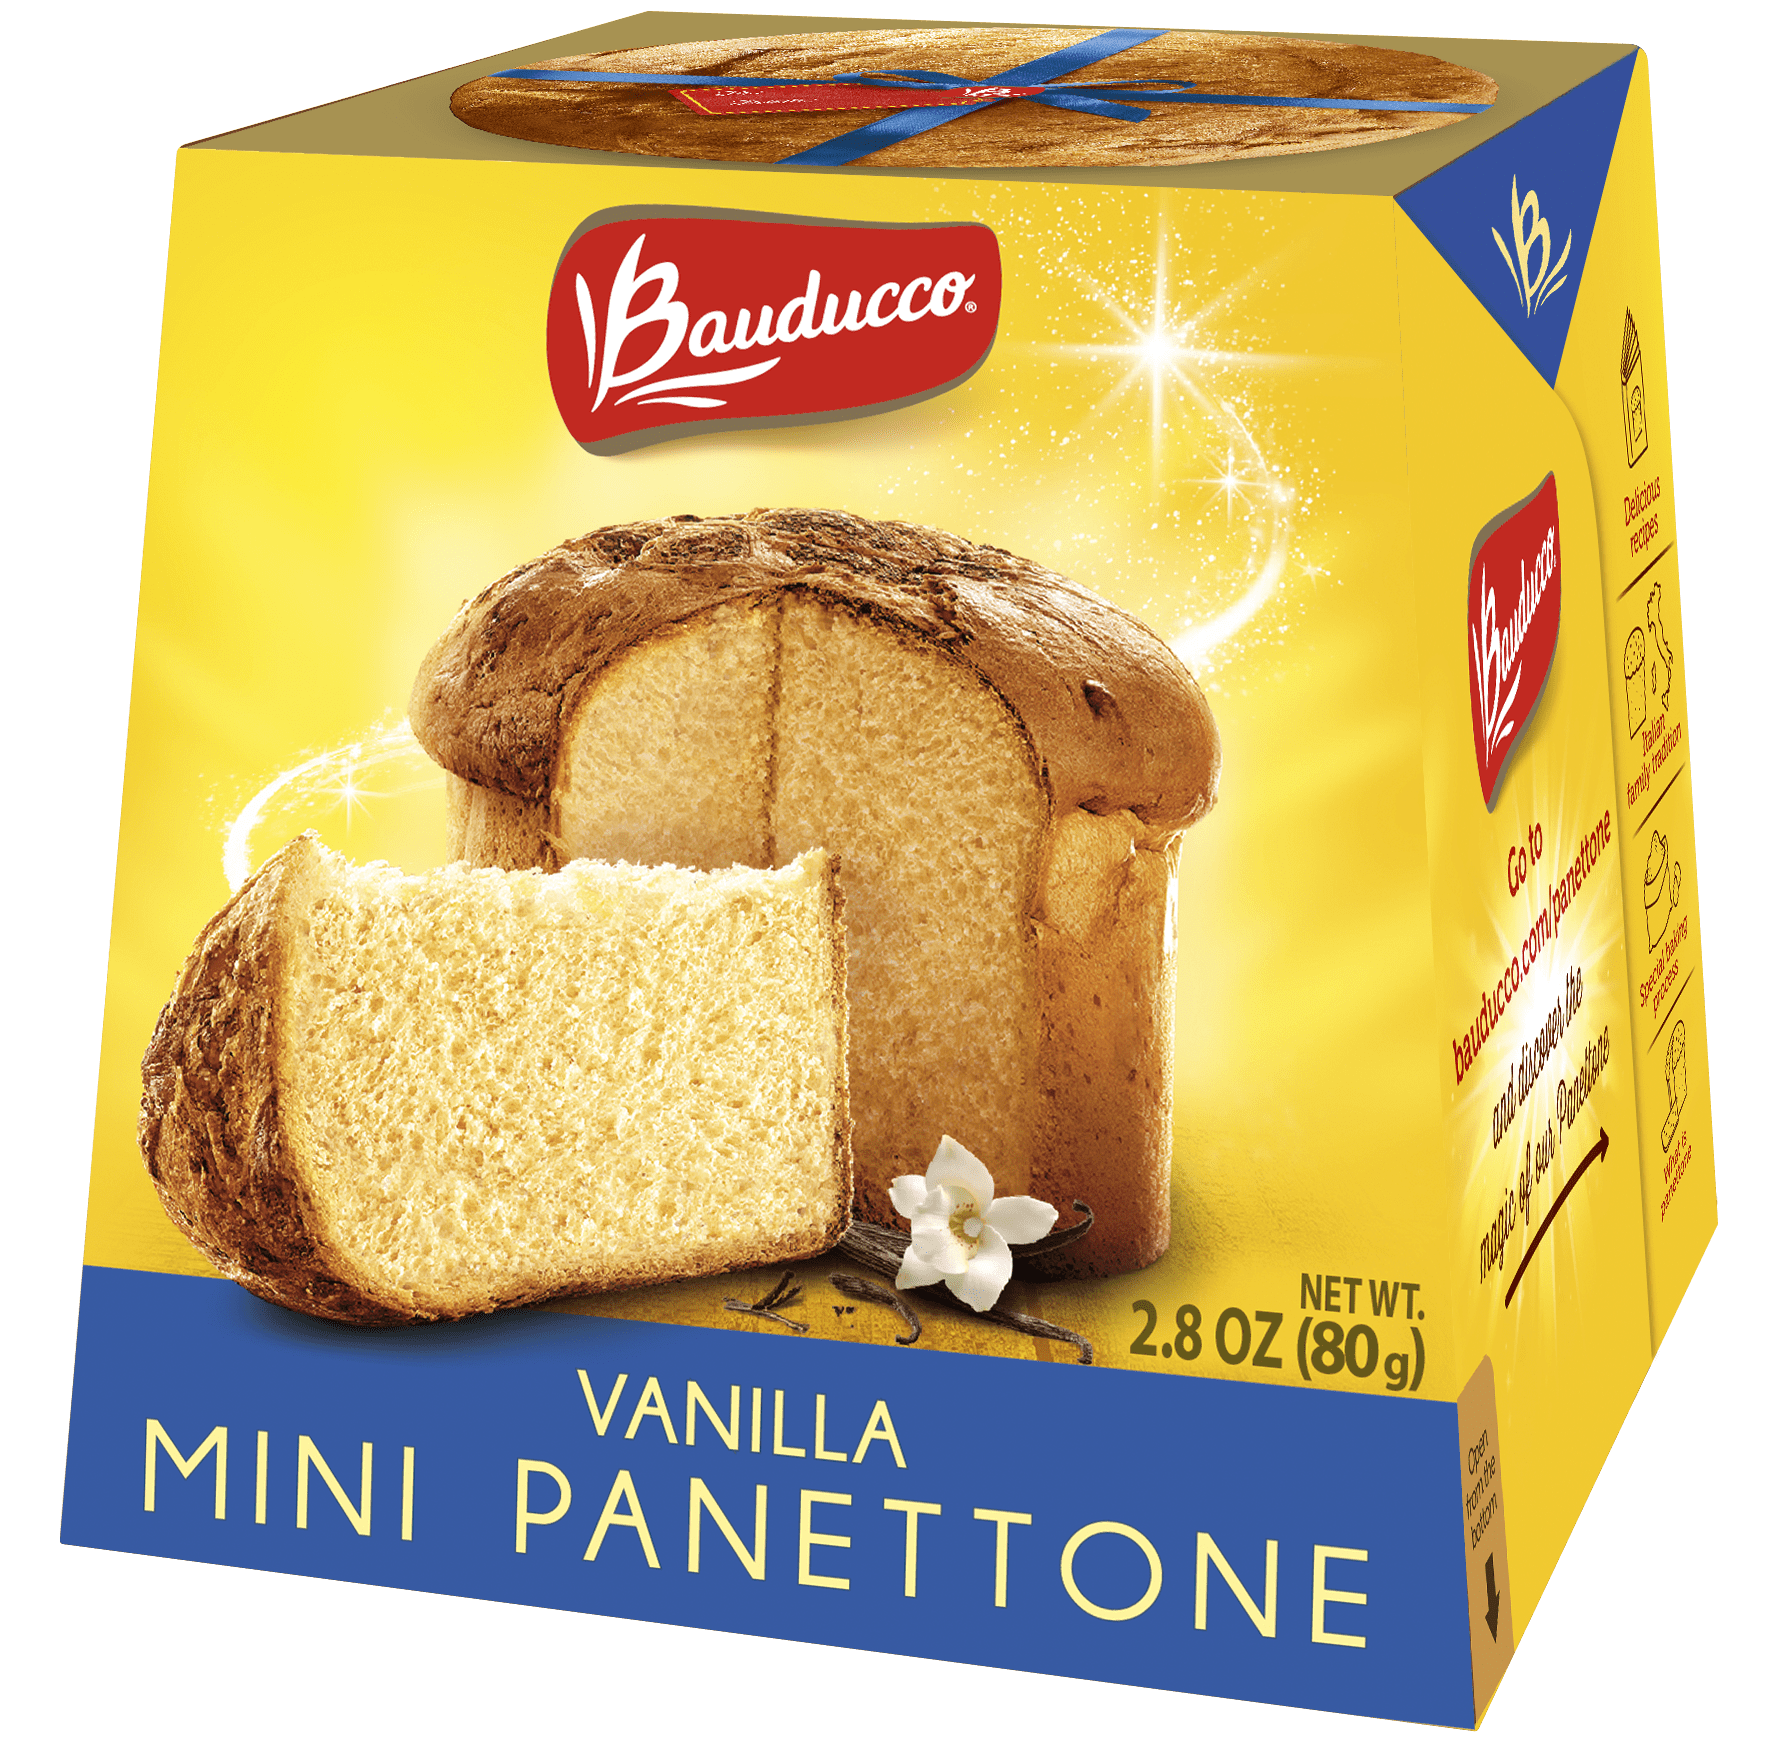 Assortment of 2 Mini Panettone Cakes + Pandoro in Gift Box